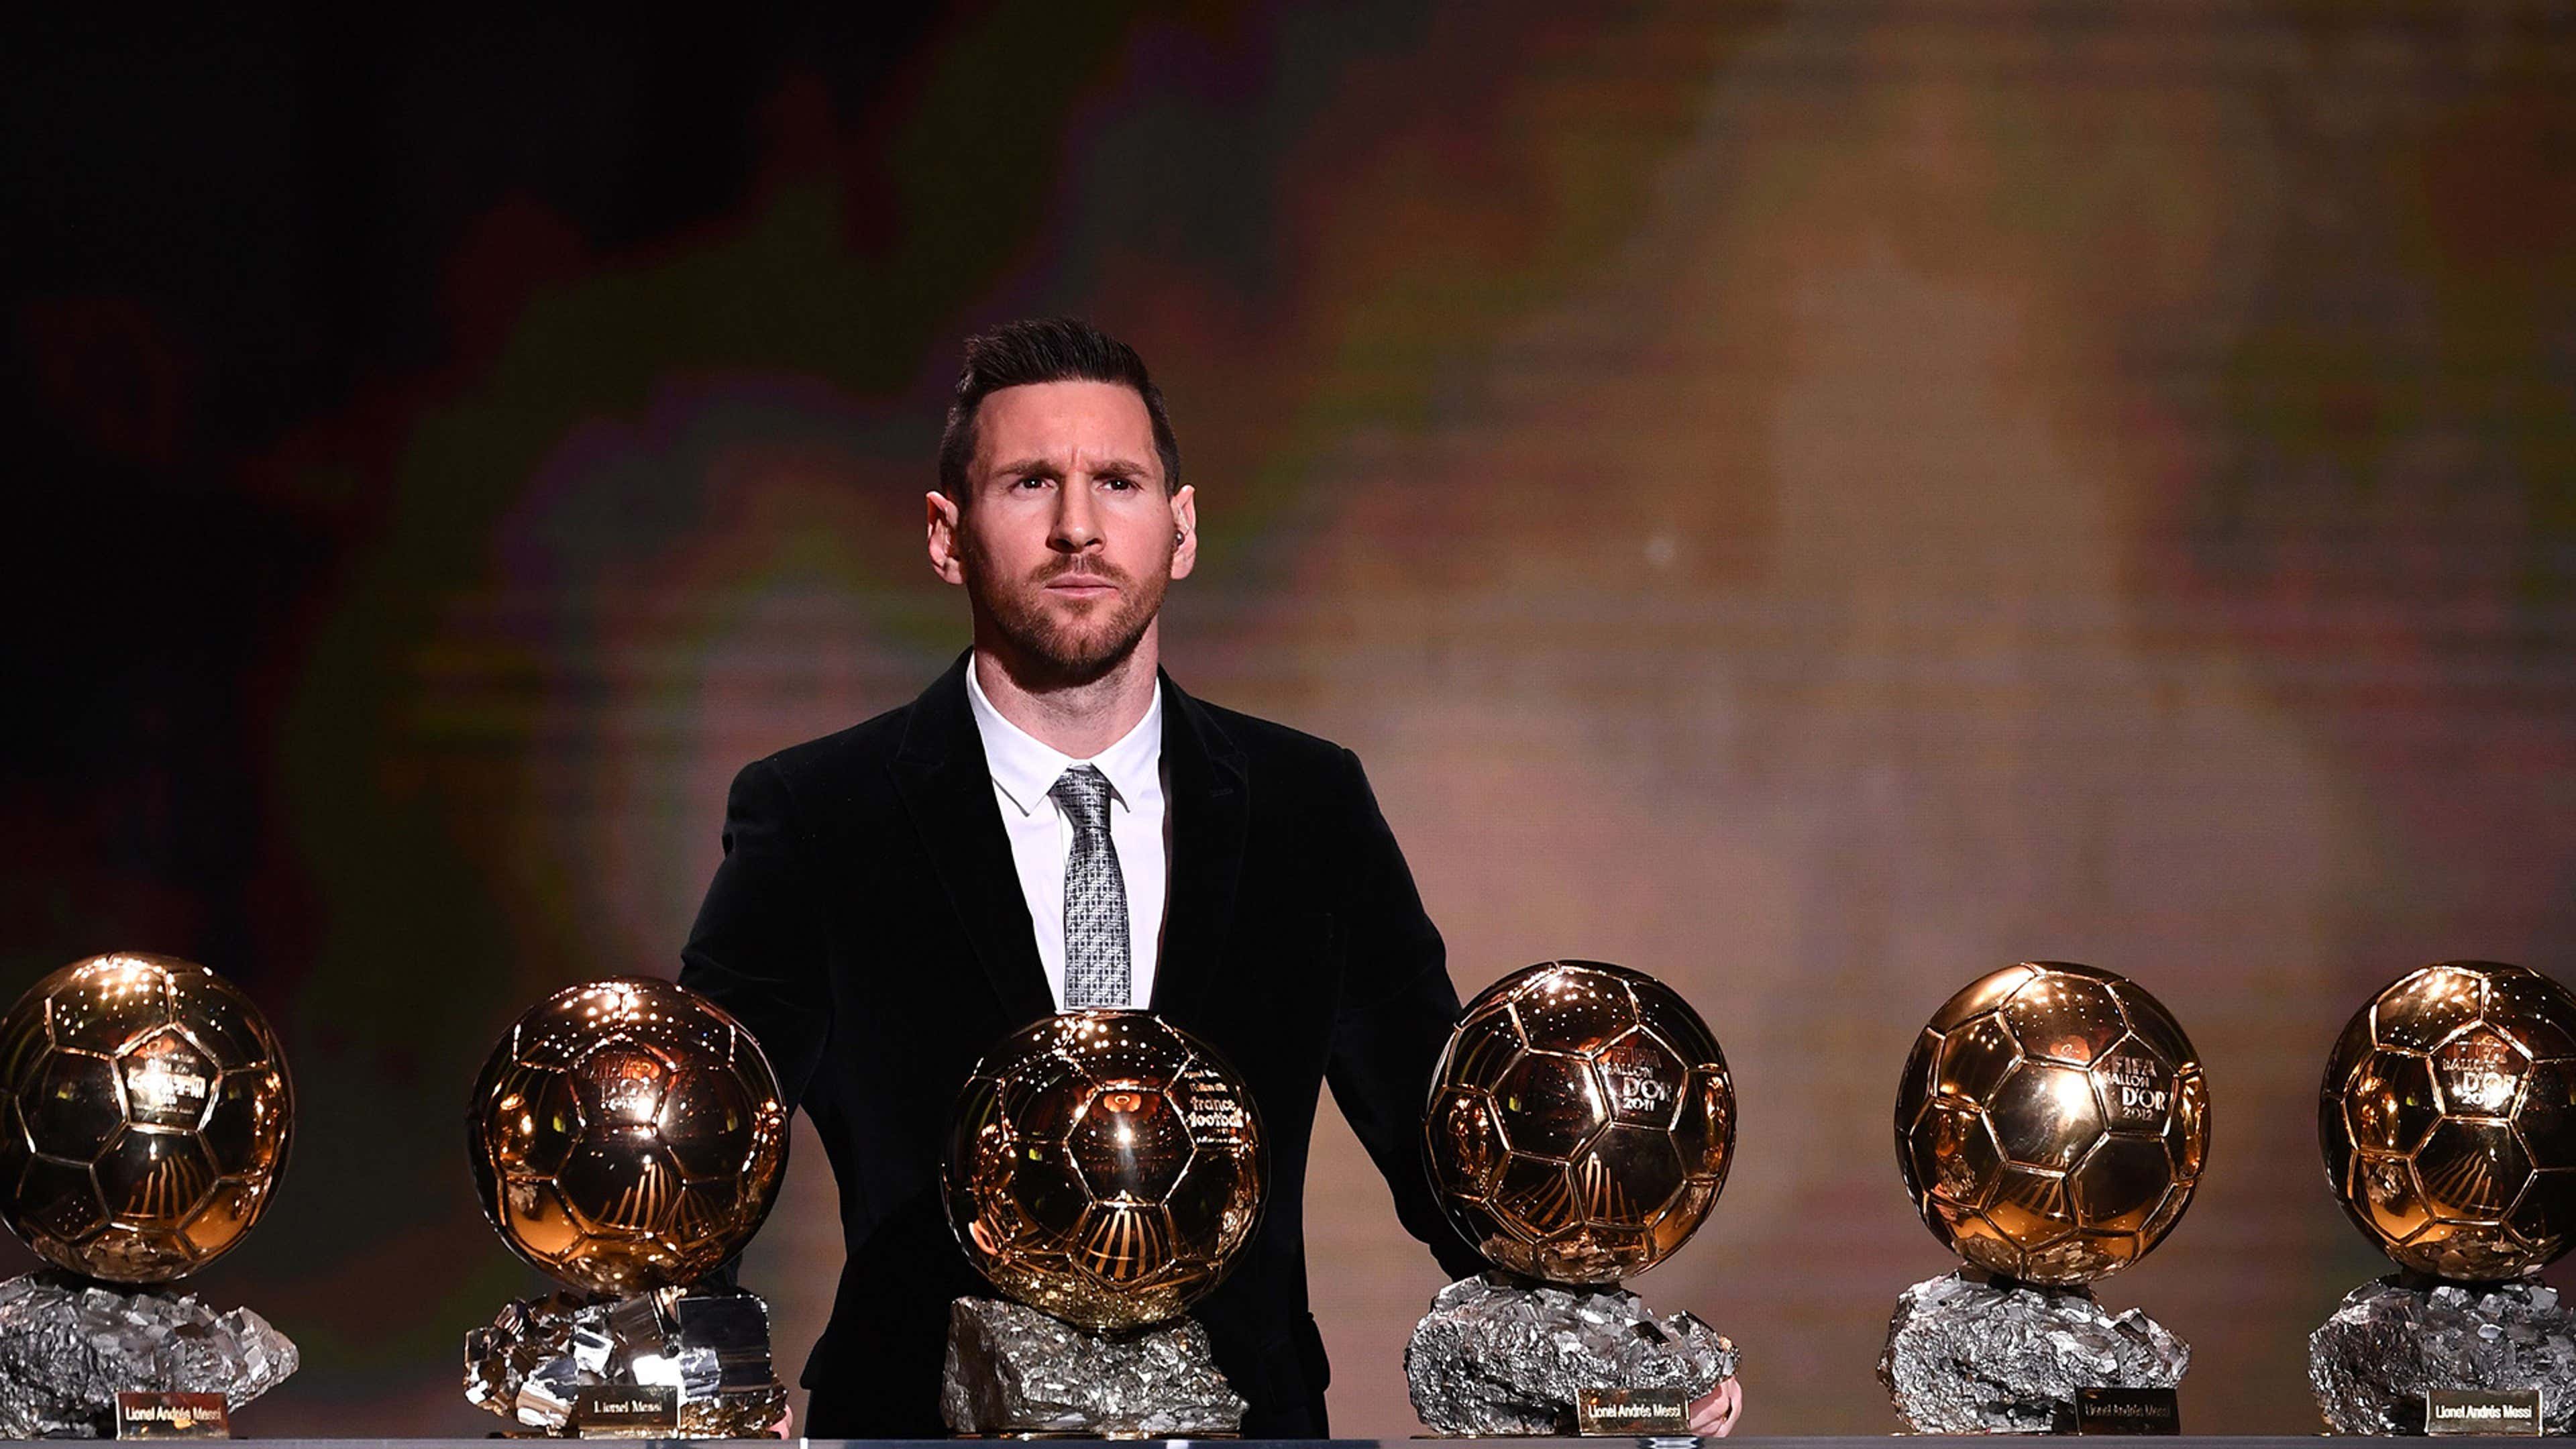 Cuánto cuesta el Balón de Oro que poseen Messi y Cristiano Ronaldo?